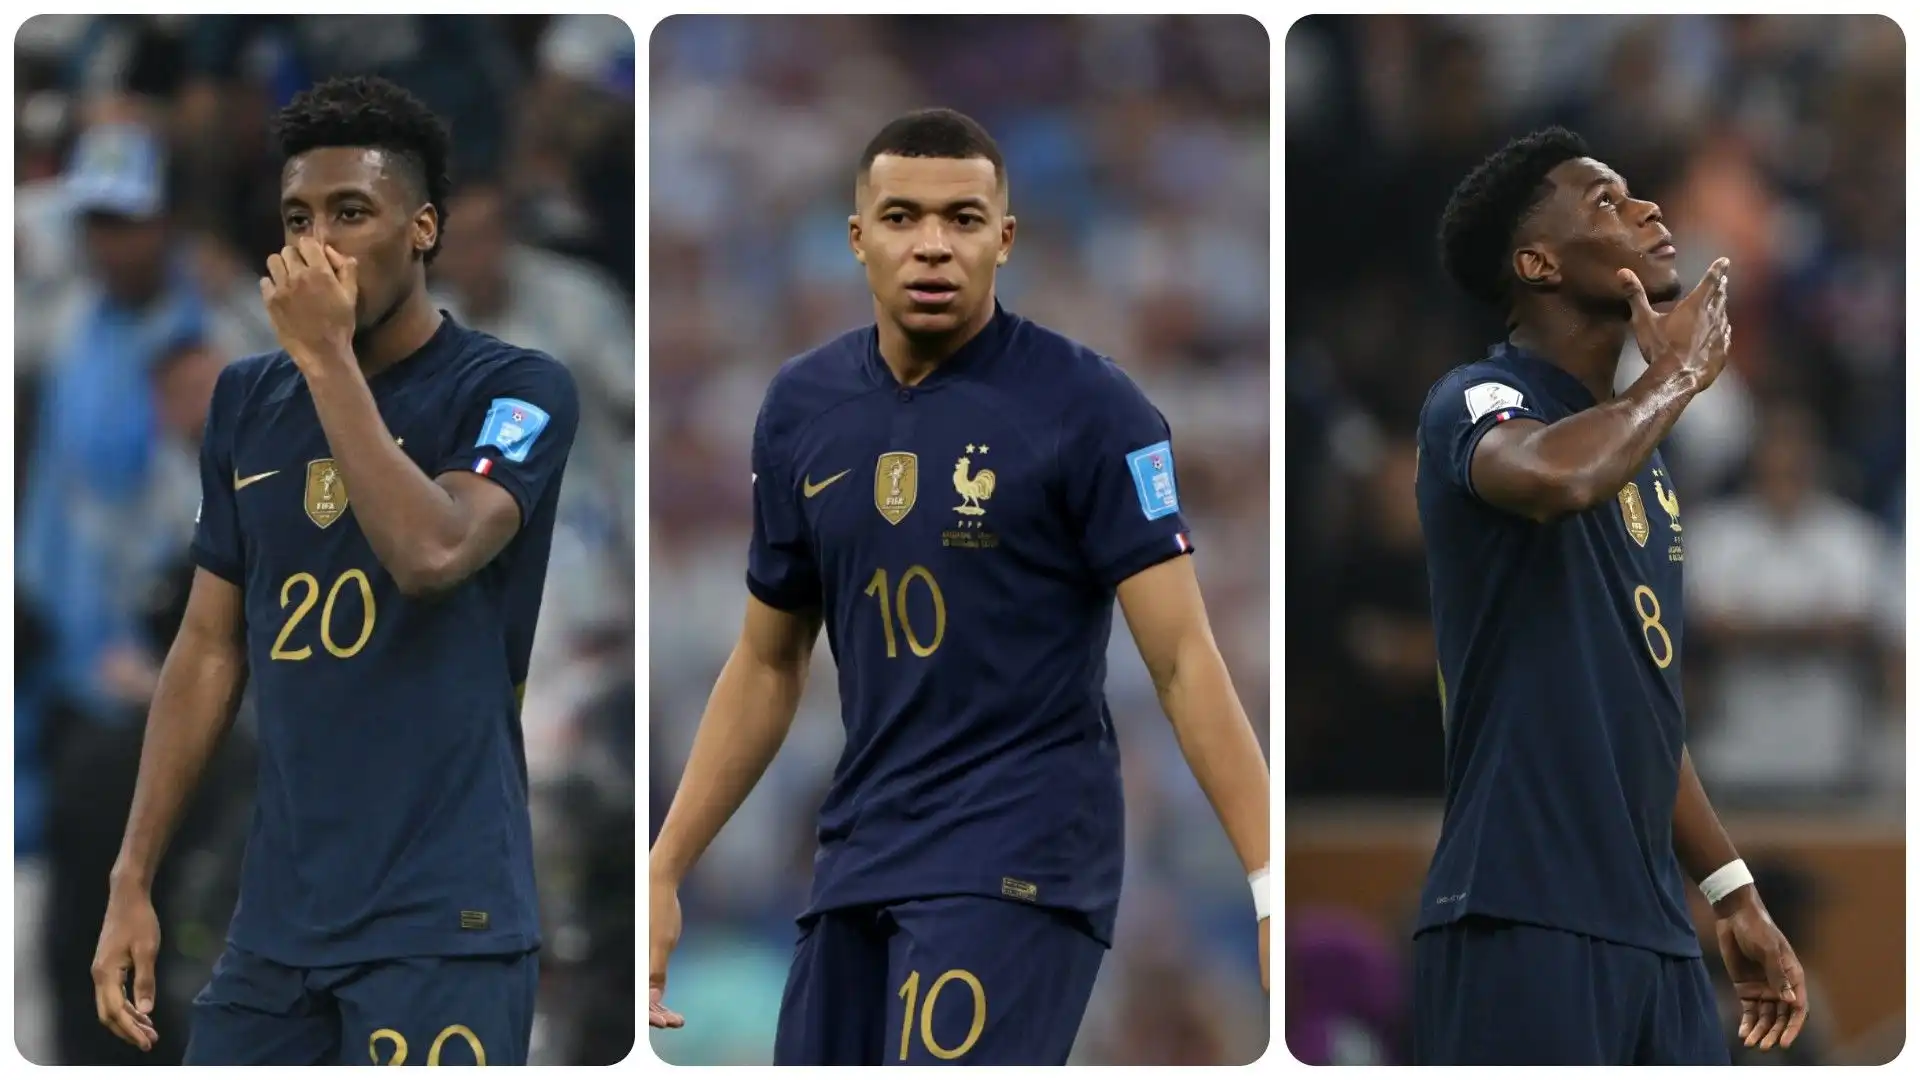 I 10 calciatori francesi più preziosi. La classifica in foto. Fonte: Transfermarkt